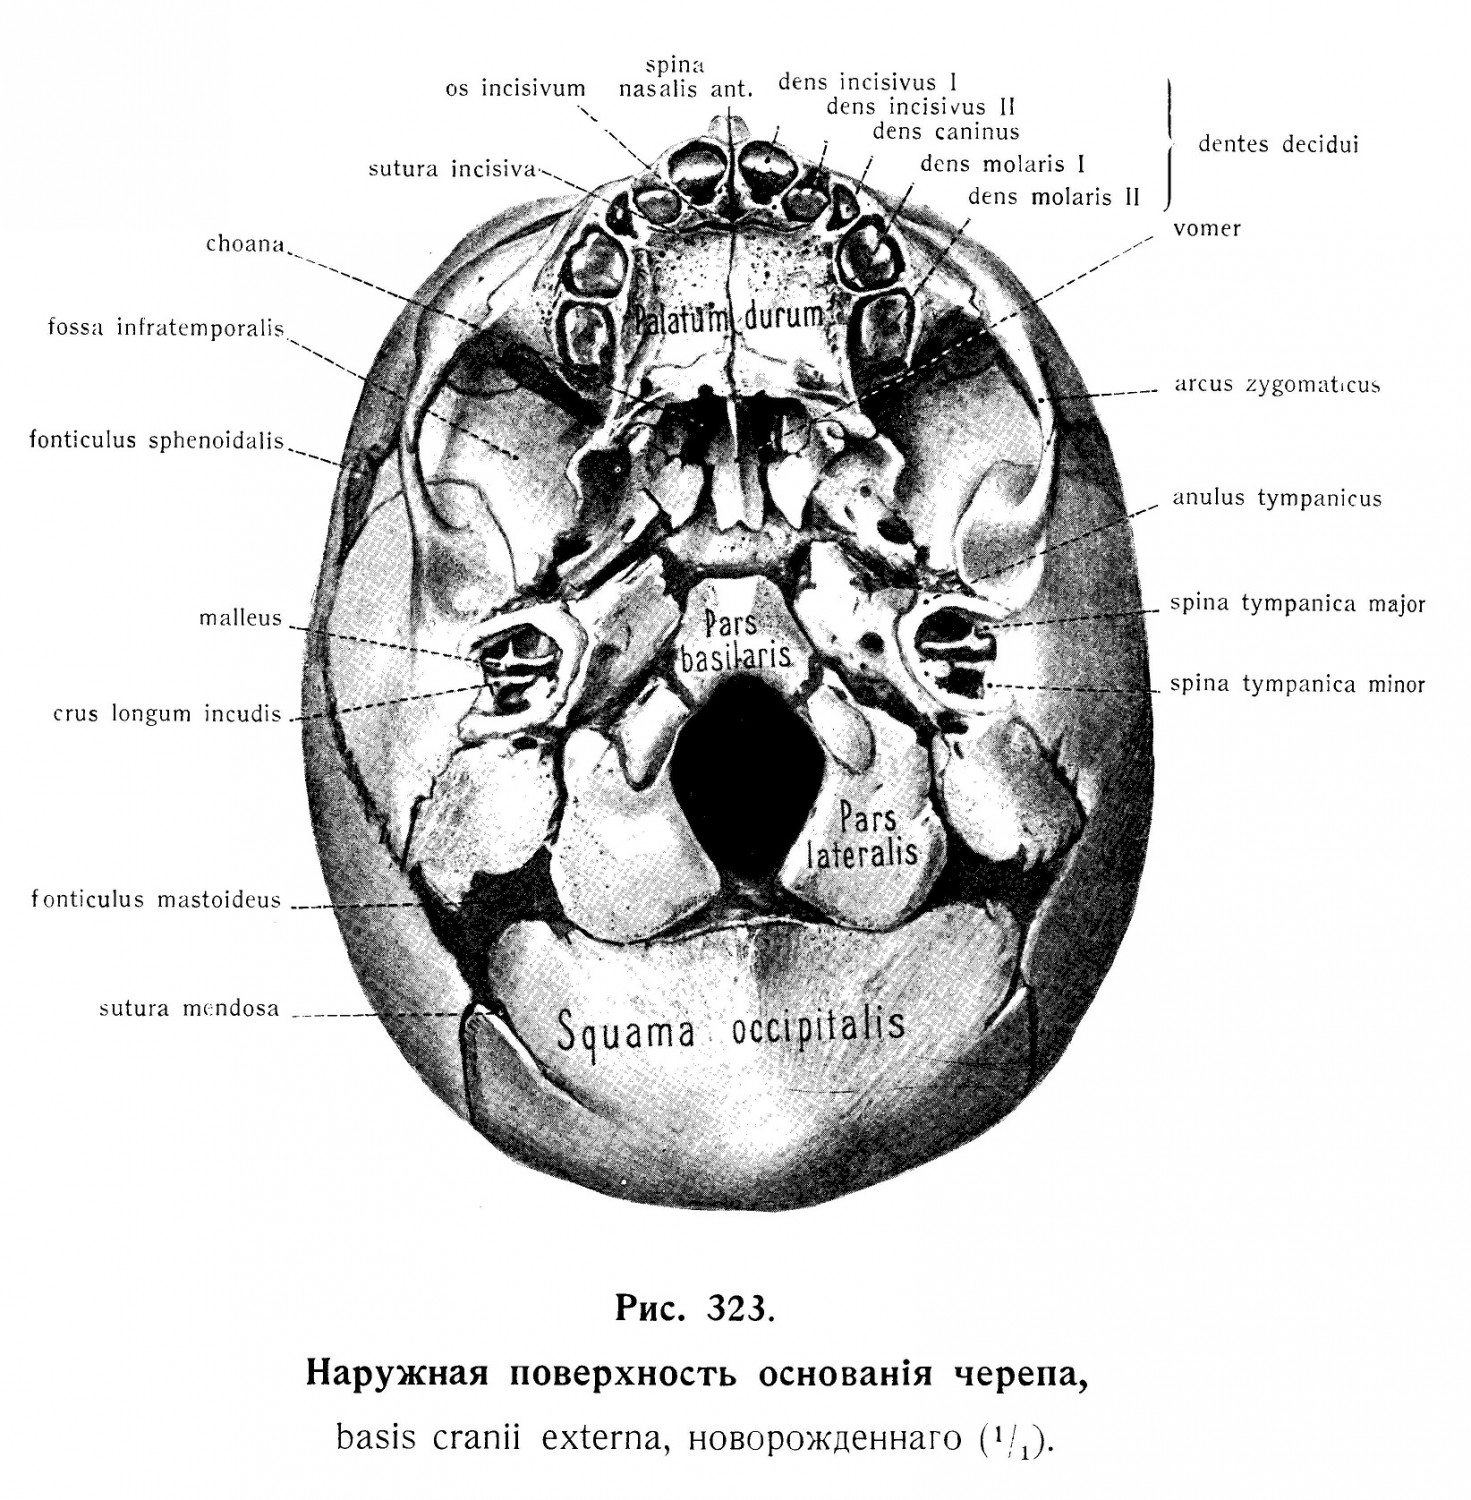 Наружная поверхность основания черепа